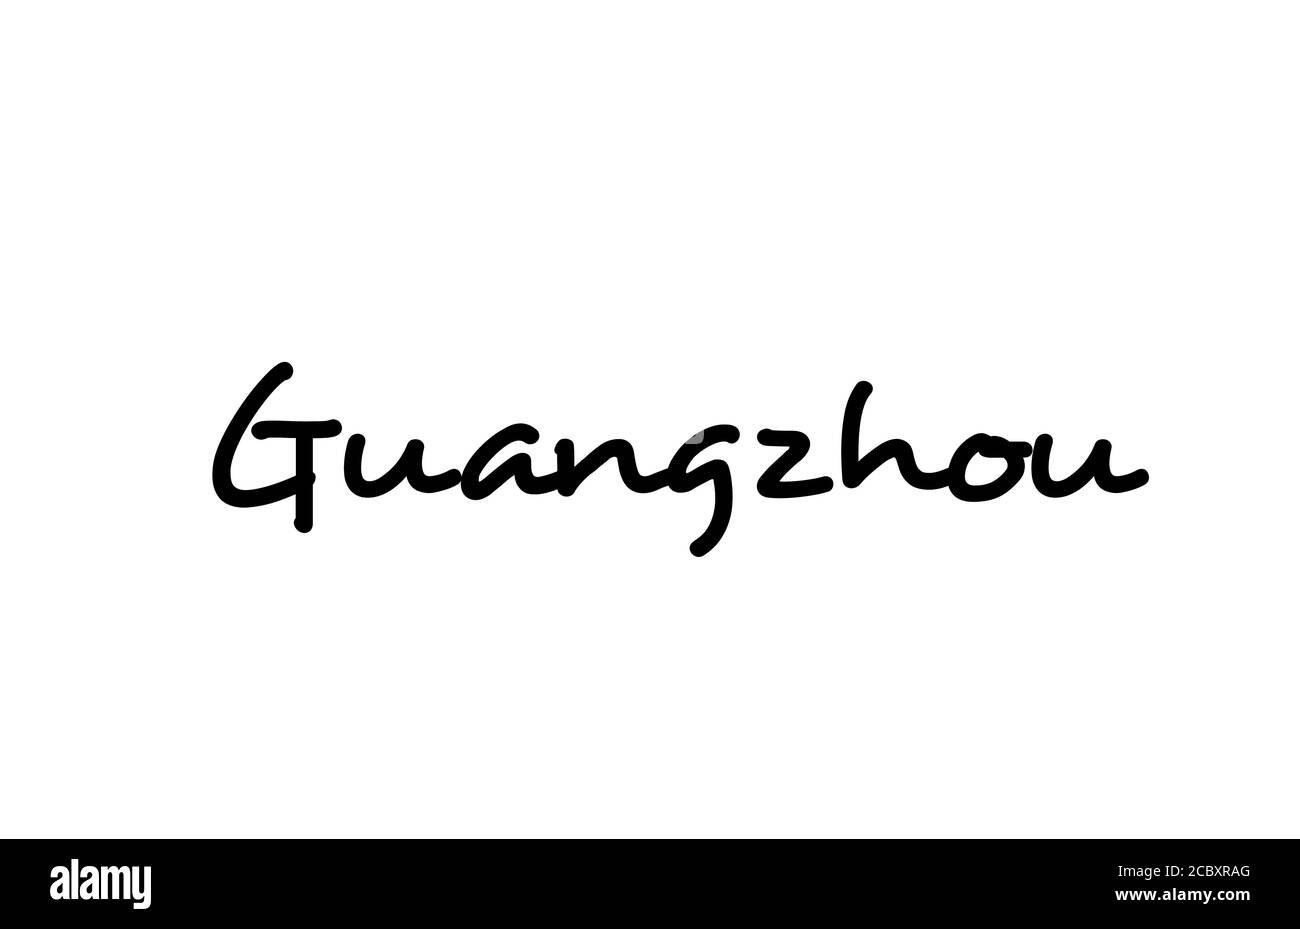 Texte manuscrit de la ville de Guangzhou lettrage à la main. Texte de calligraphie. Typographie en noir Illustration de Vecteur